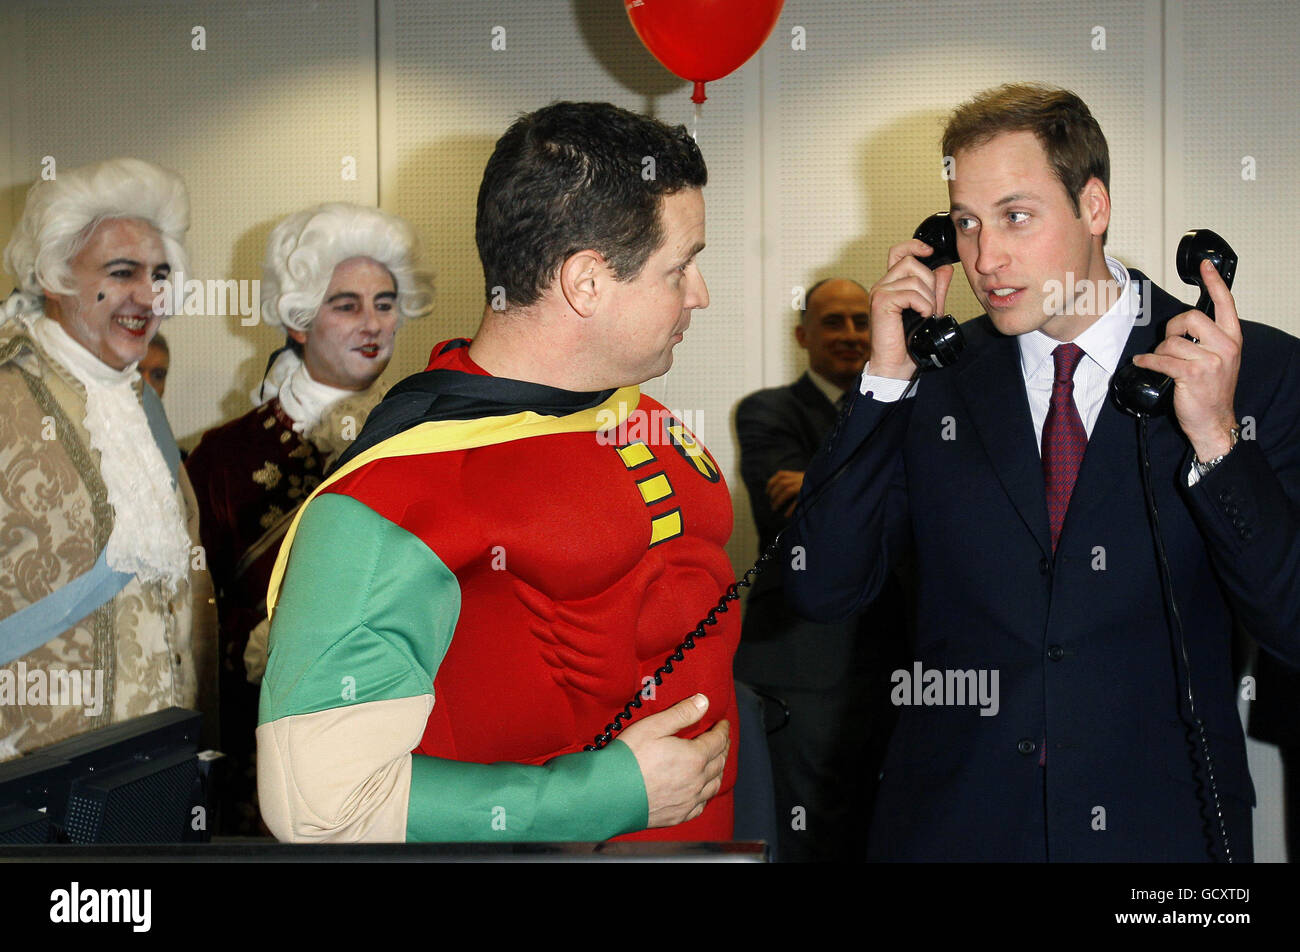 Prince William (à droite) conclut une transaction téléphonique à l'ICAP alors qu'il participe à la Journée annuelle de la Charité de l'ICAP à Londres. Banque D'Images